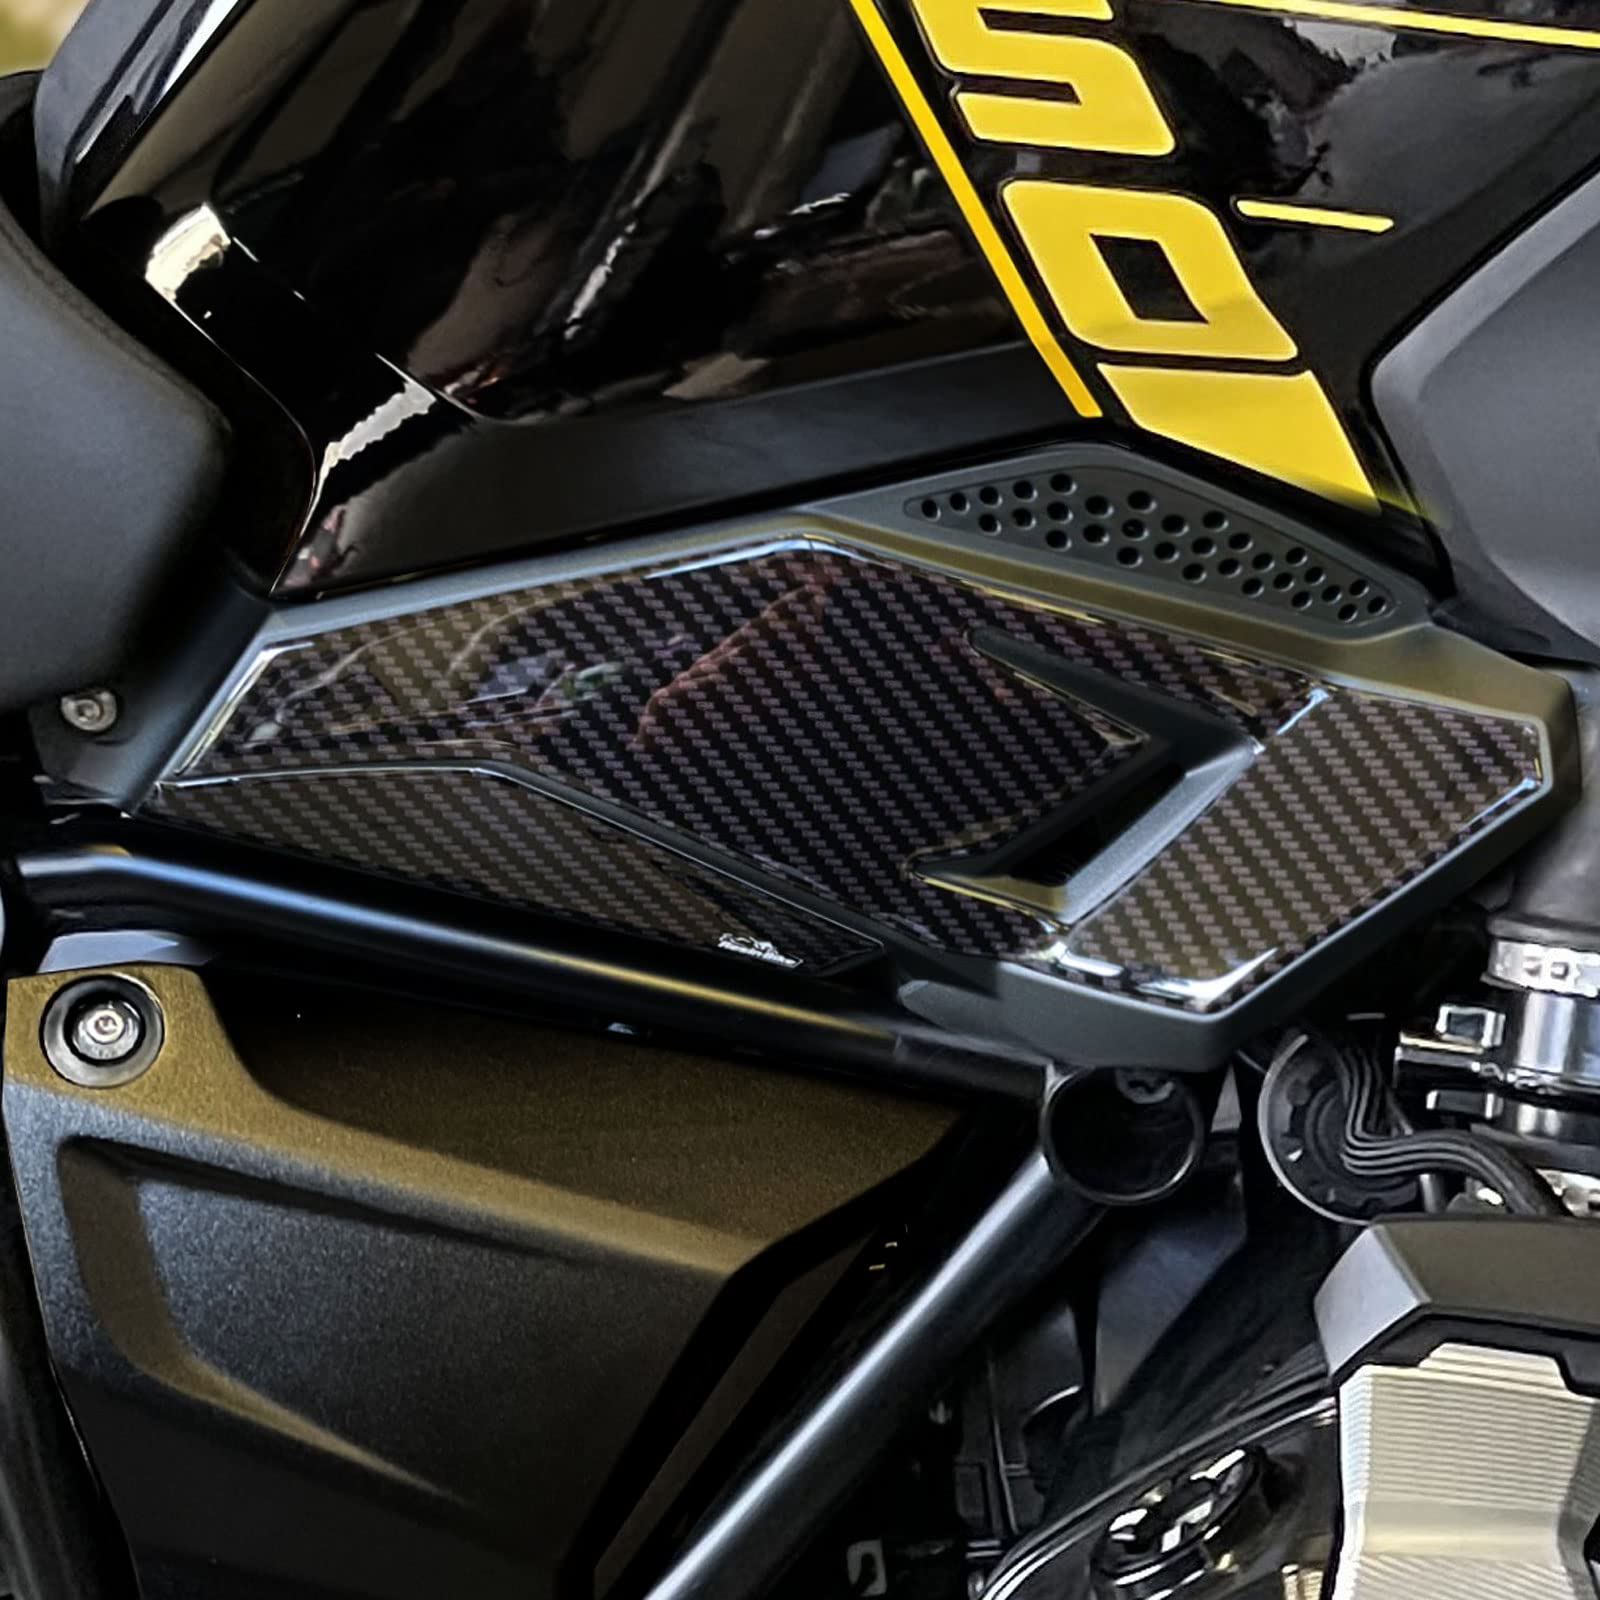 Resin Bike Aufkleber für Motorrad Kompatibel mit BMW R 1250 GS Triple Black - Edition 40th 2021. Rahmenschutz vor Stößen und Kratzern. Paar 3D-Harzklebstoff - Stickers - Made in Italy von Resin Bike